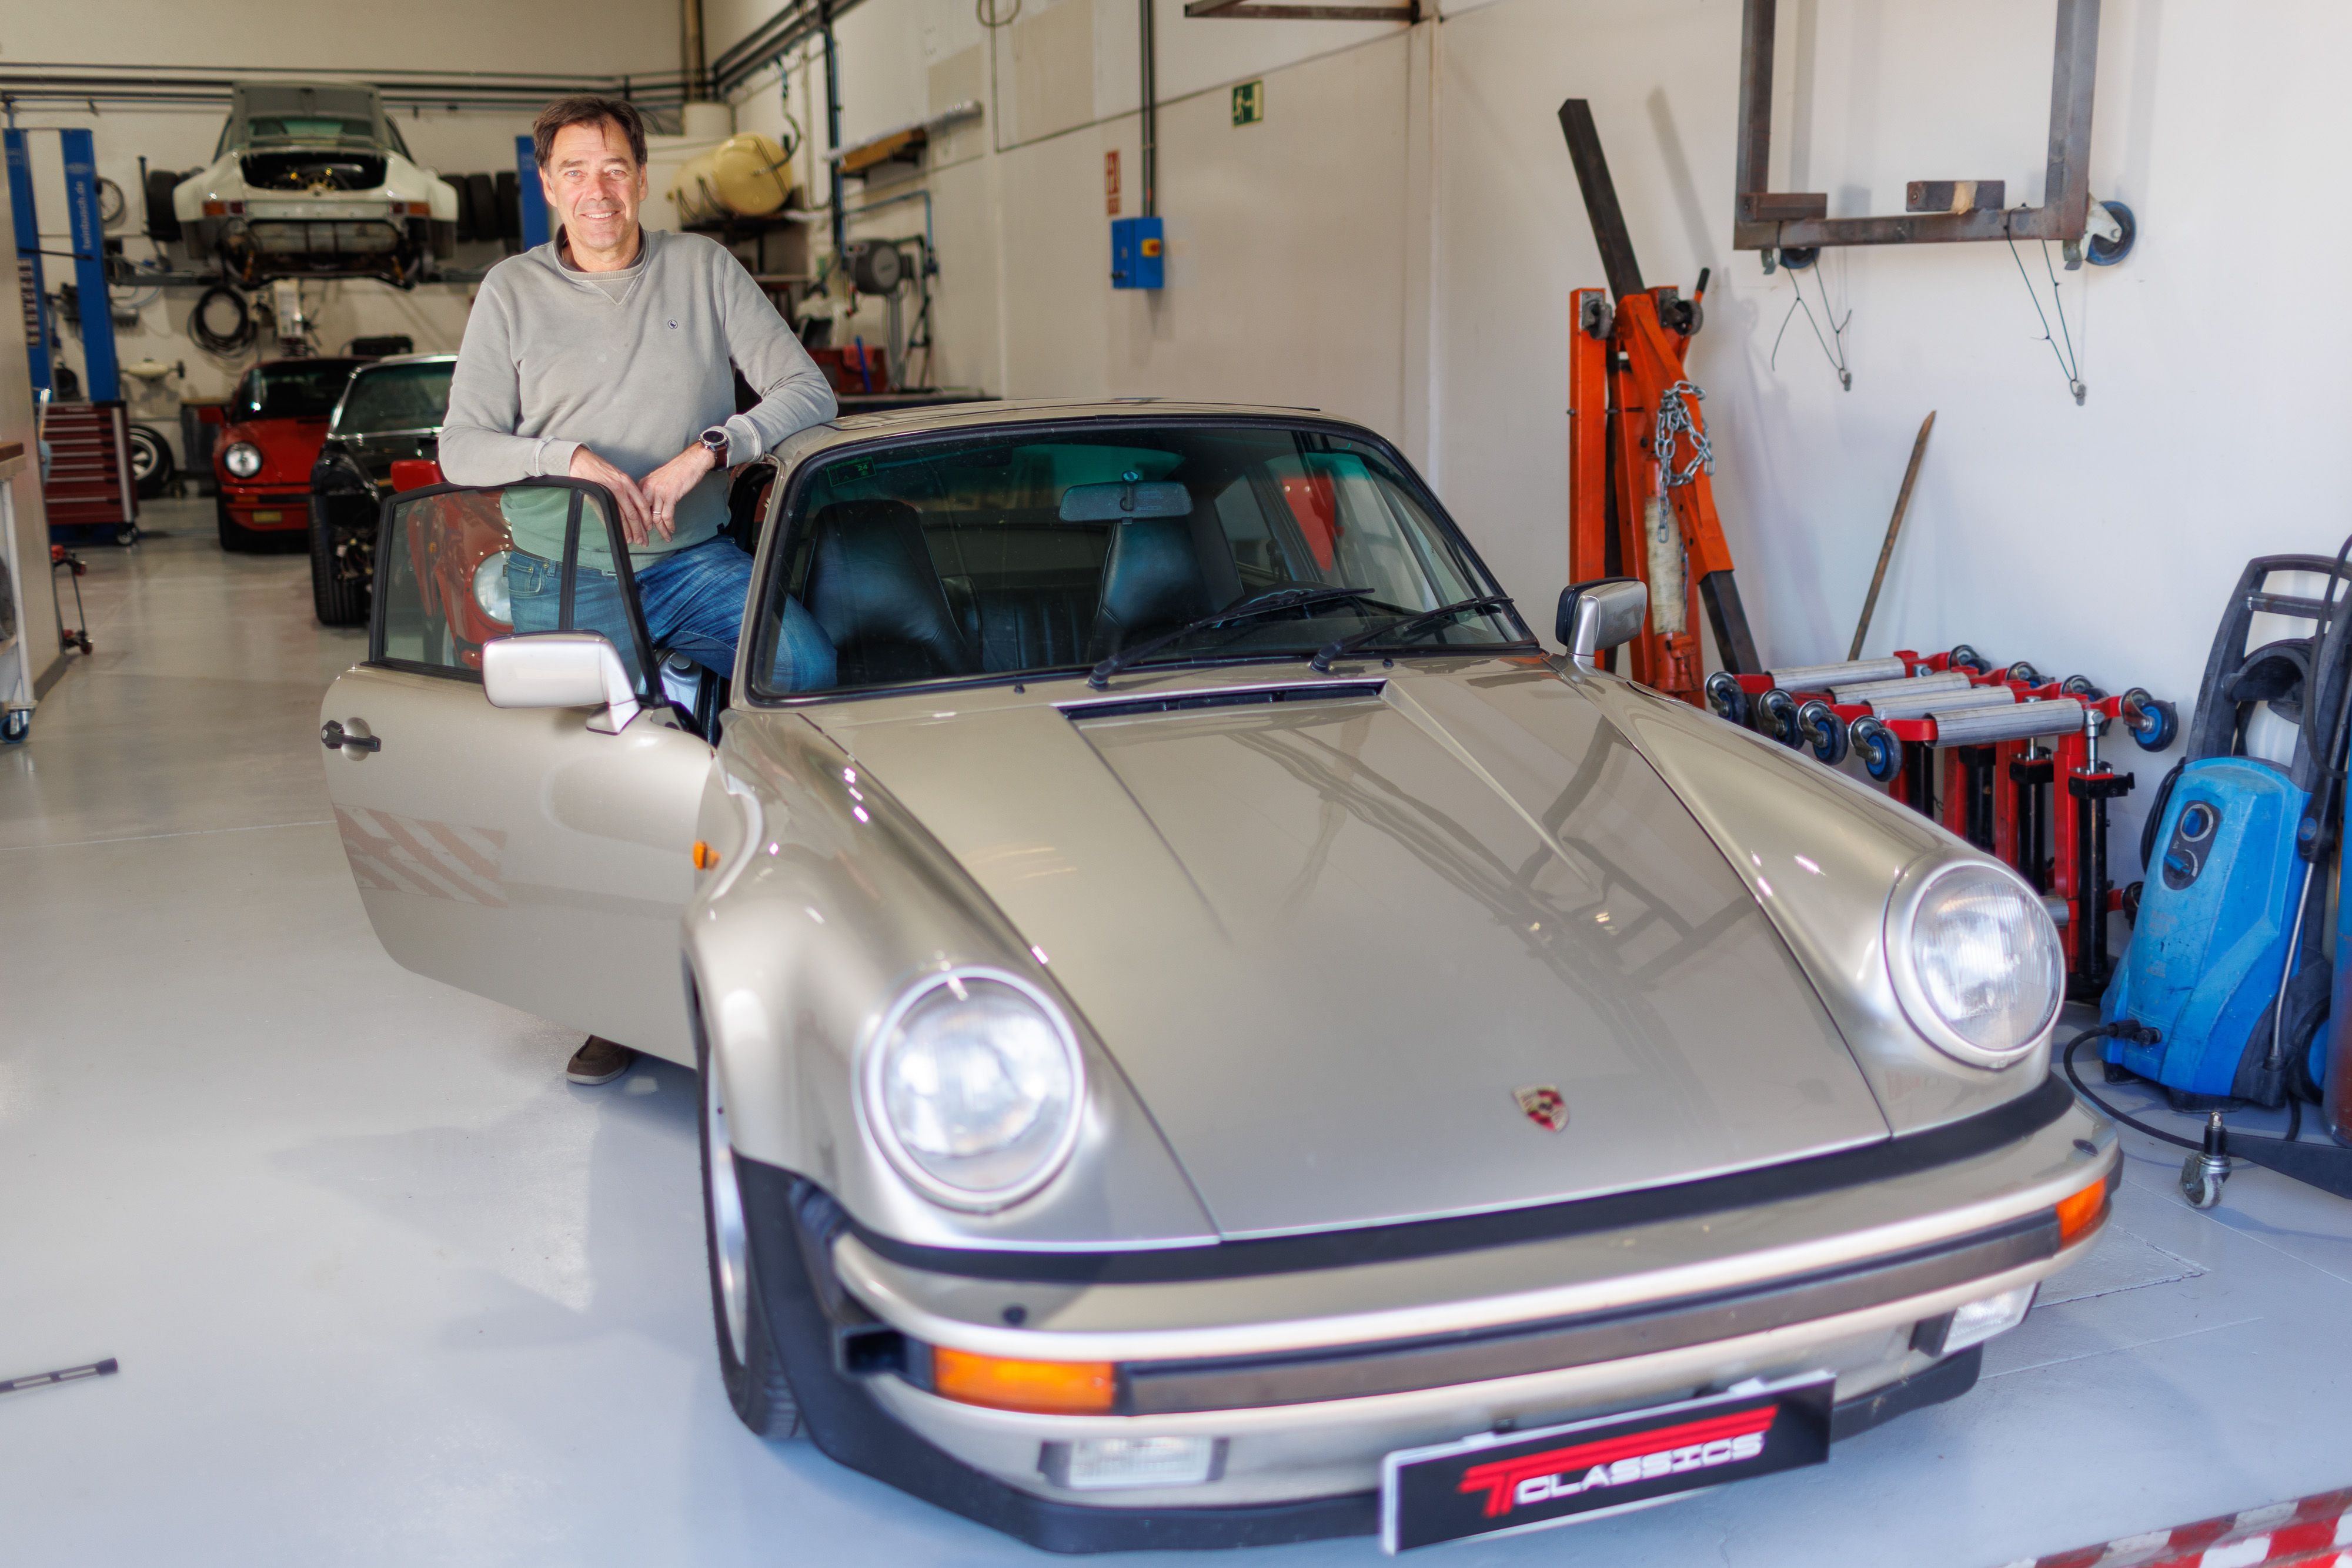 Michel junto a su Porsche Turbo look del 83 de color grisáceo.